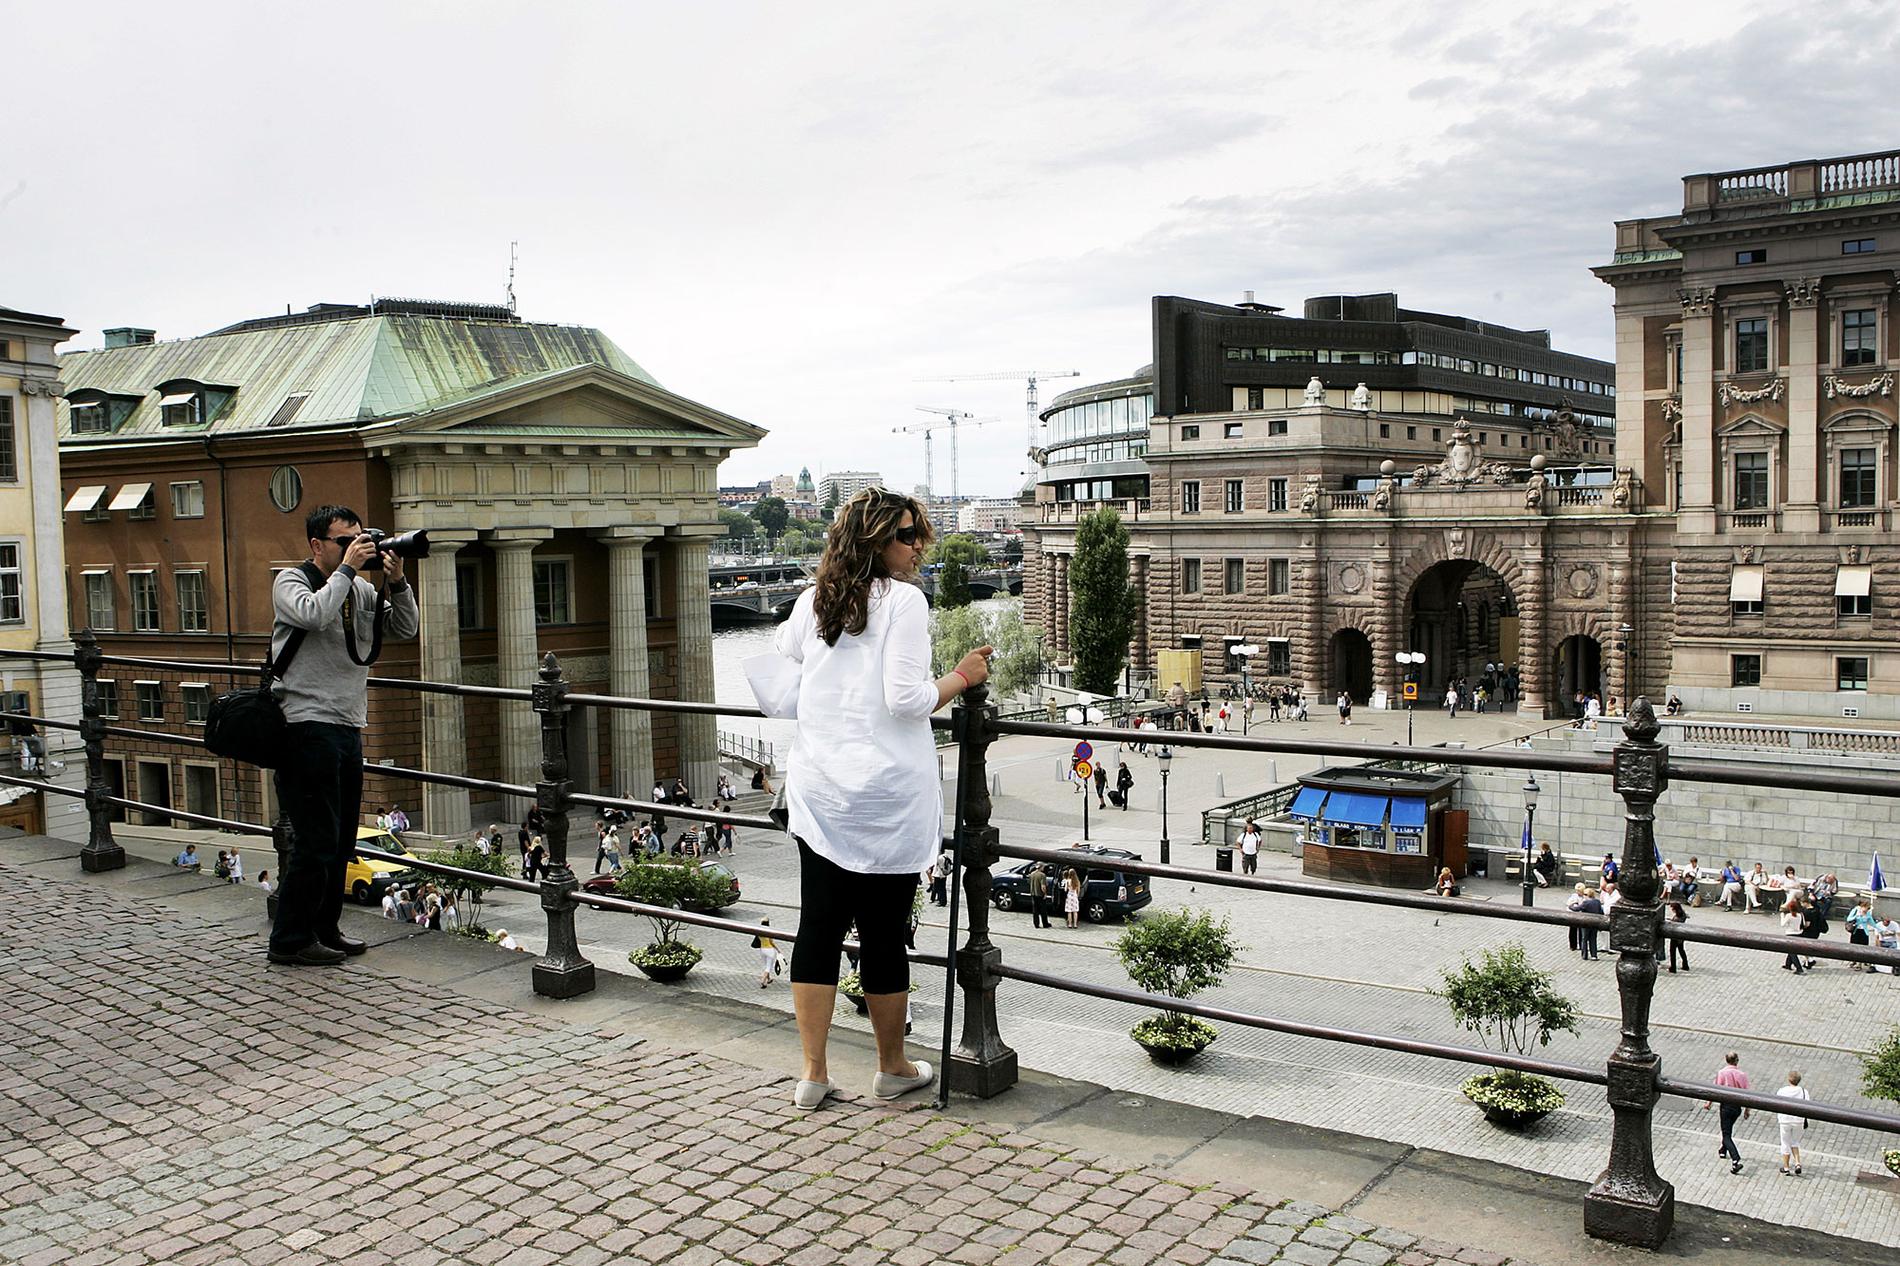 Polska turister i Sverige betalar minst för hotellnätterna i genomsnitt. Personerna på bilden har inget med artikeln att göra.